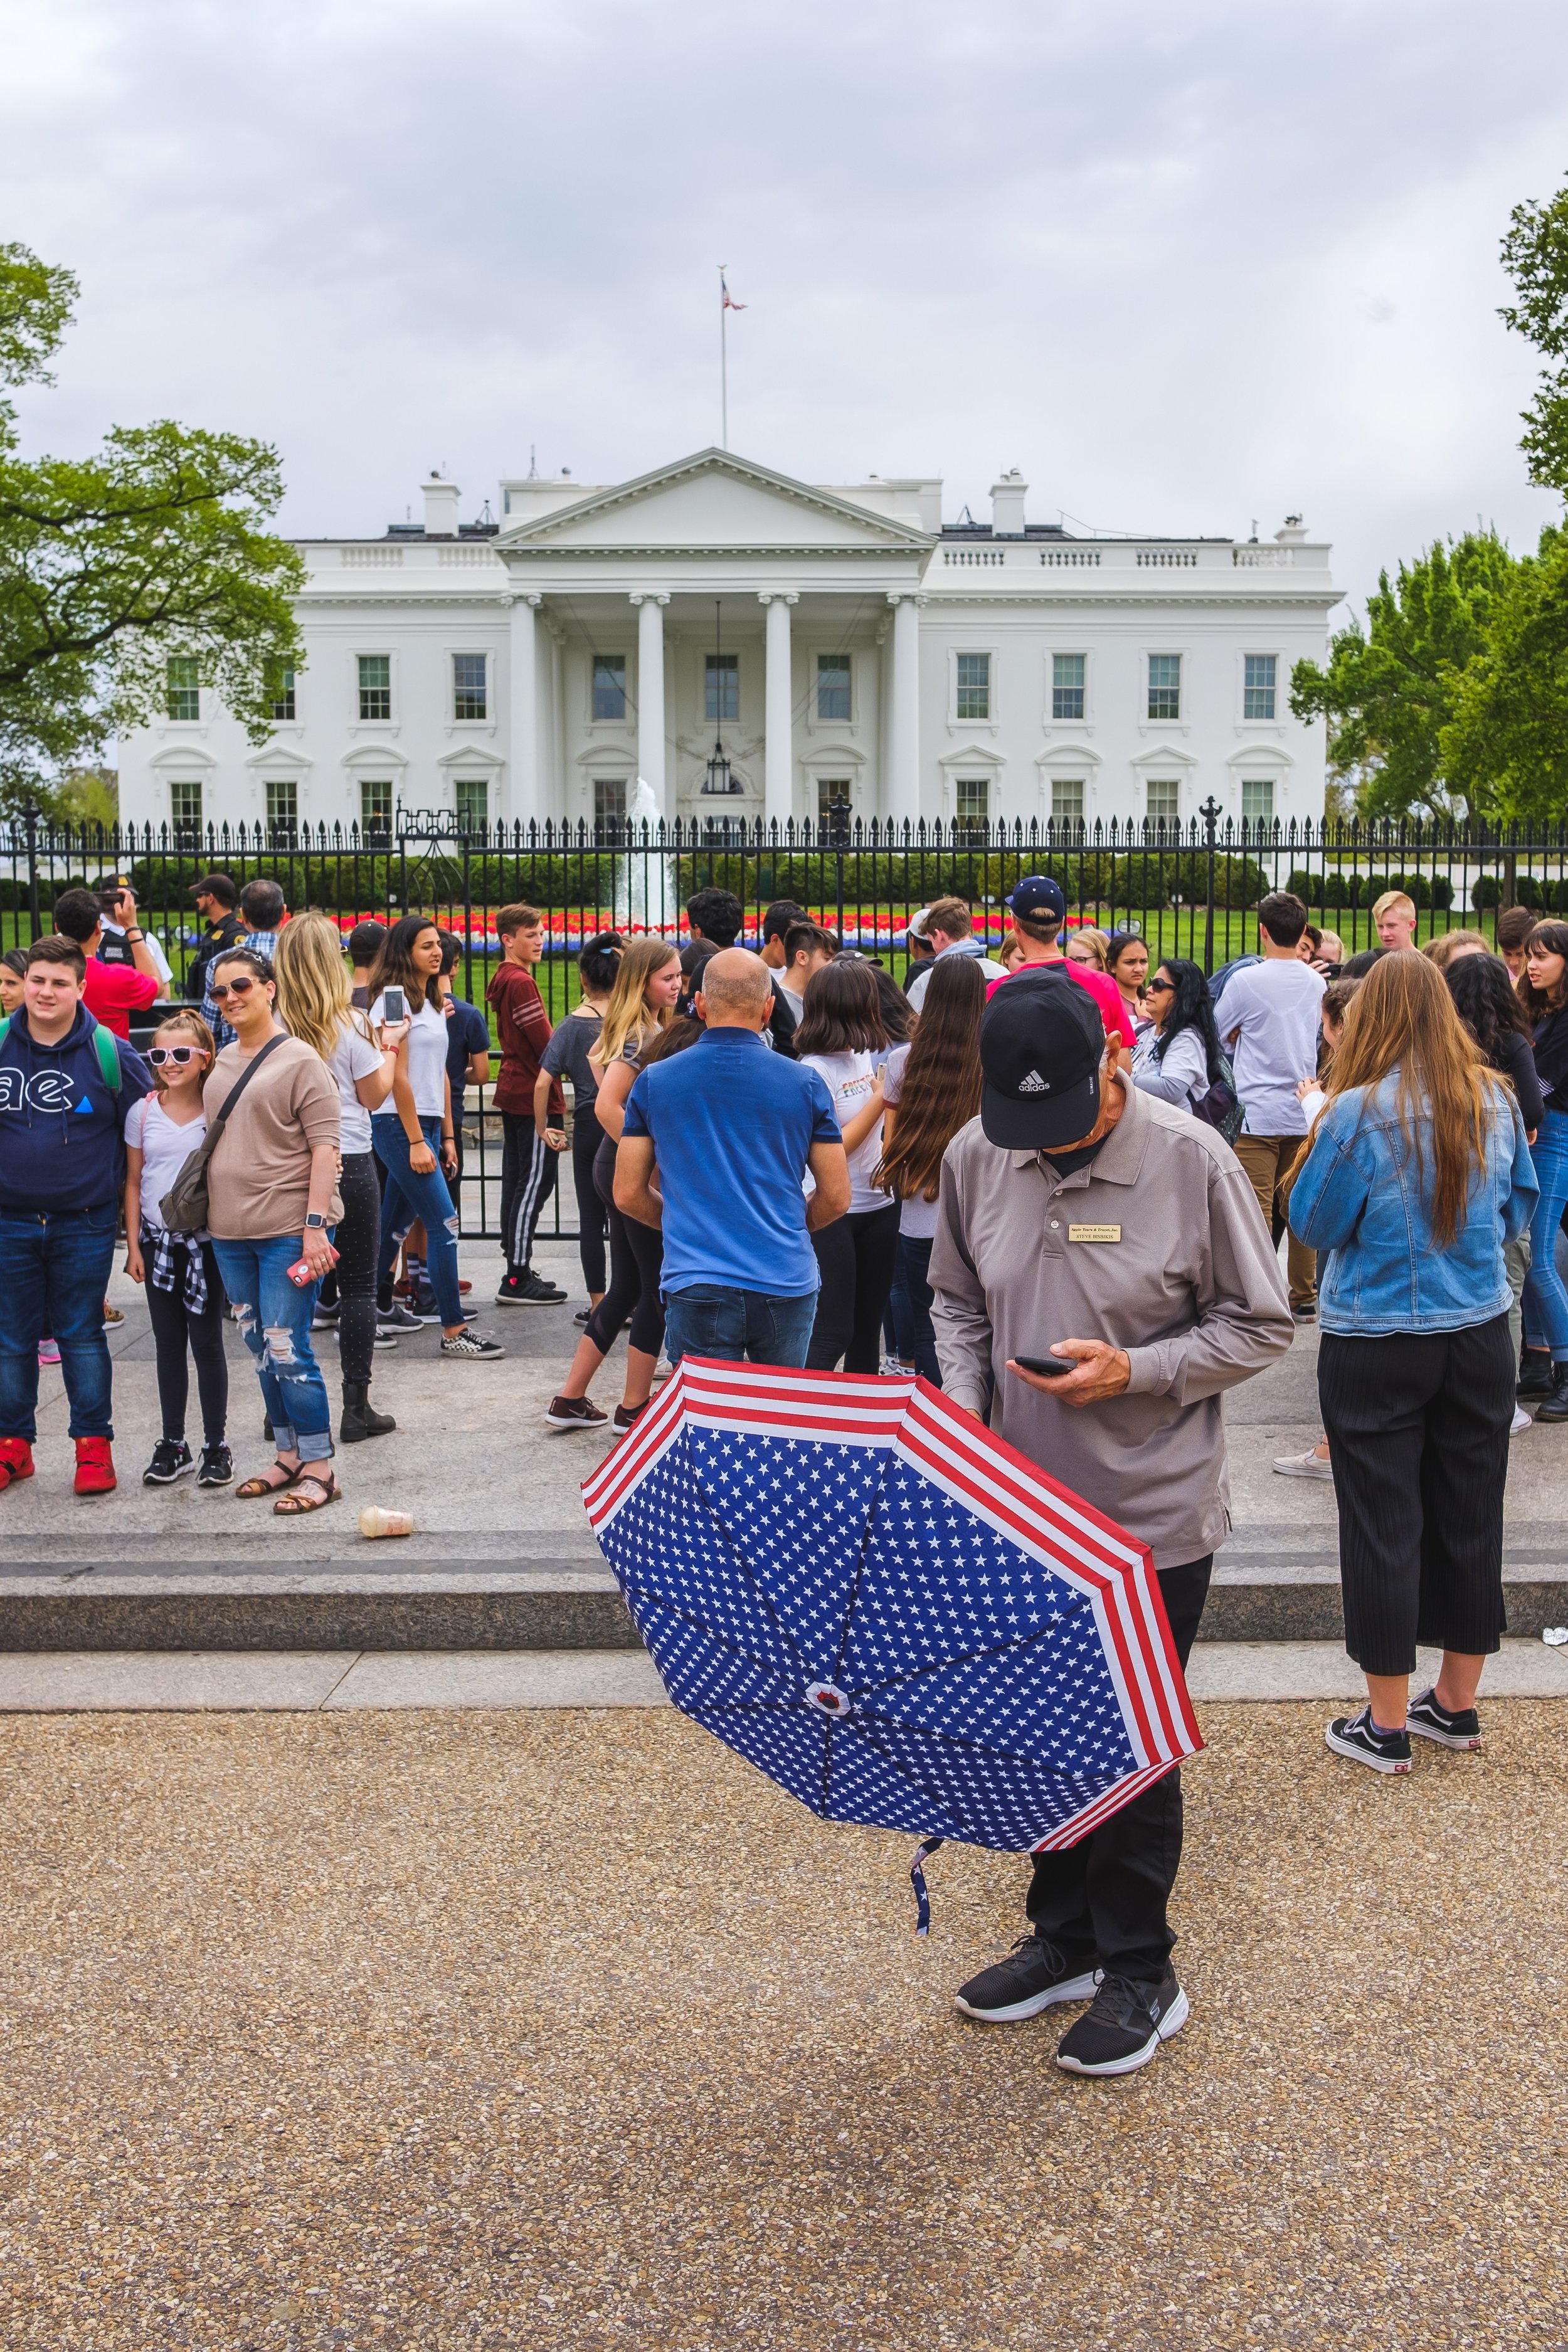  Patriotic umbrella man at the White House. 